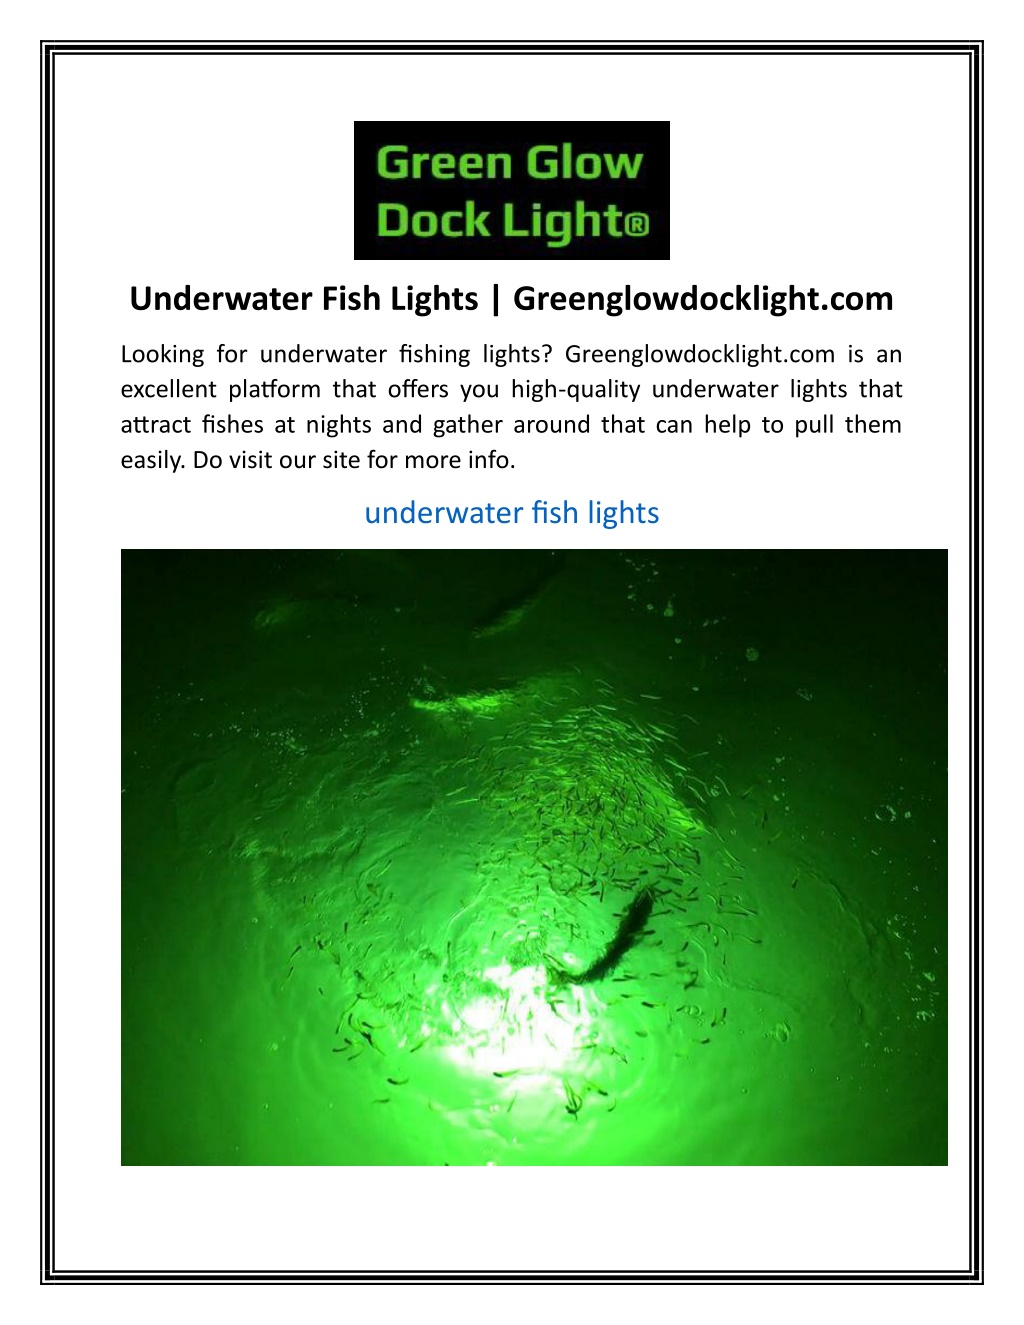 PPT - Underwater Fish Lights Greenglowdocklight PowerPoint